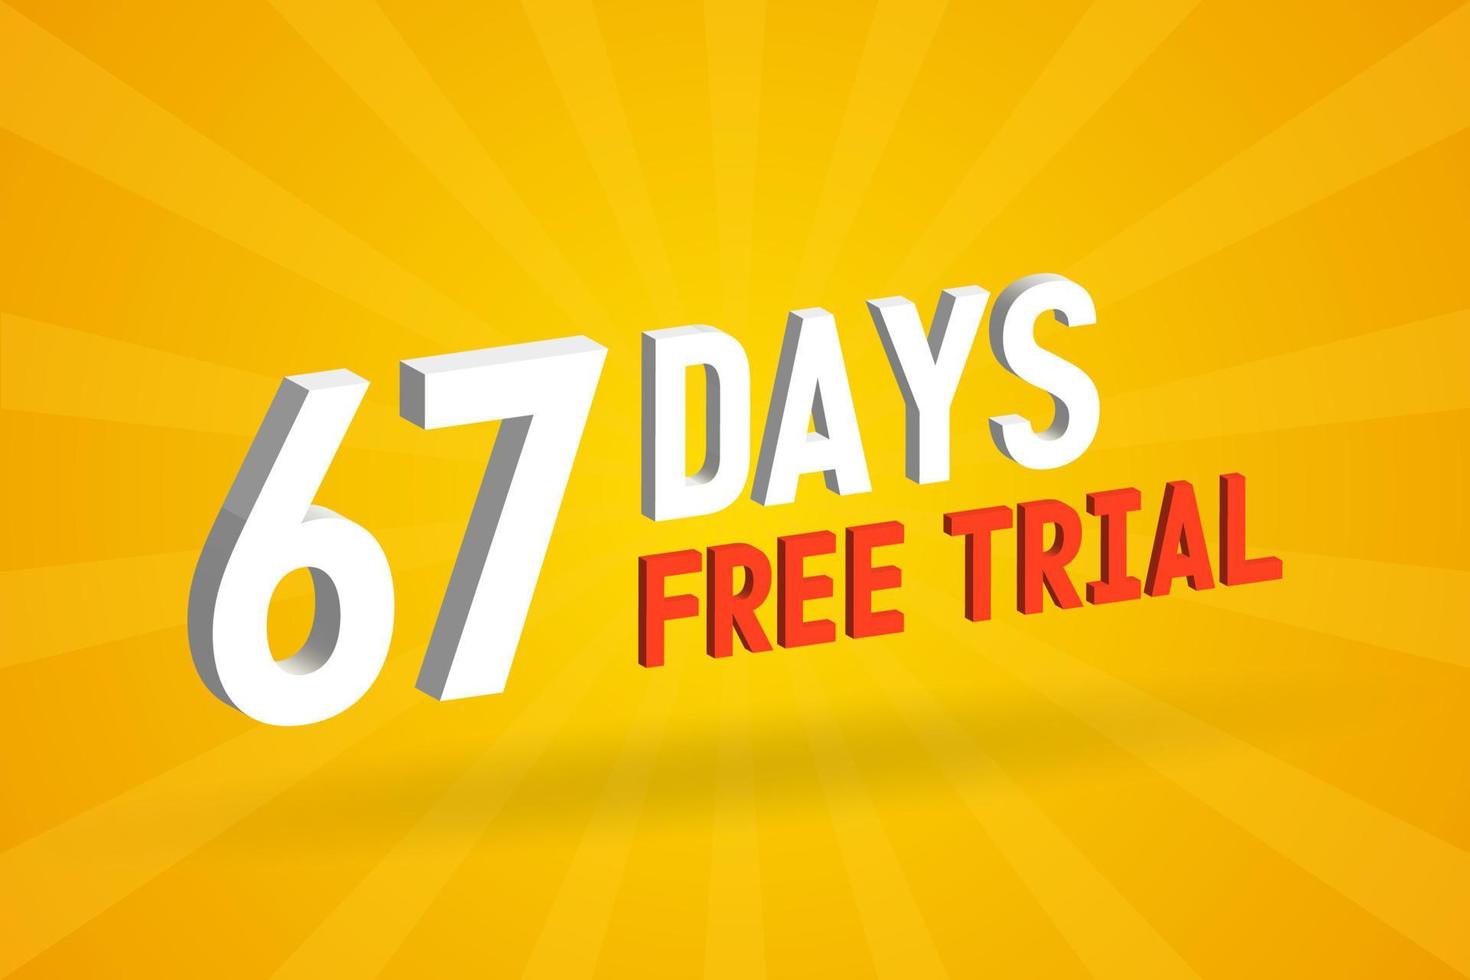 offre gratuite 67 jours d'essai gratuit vecteur de stock de texte 3d